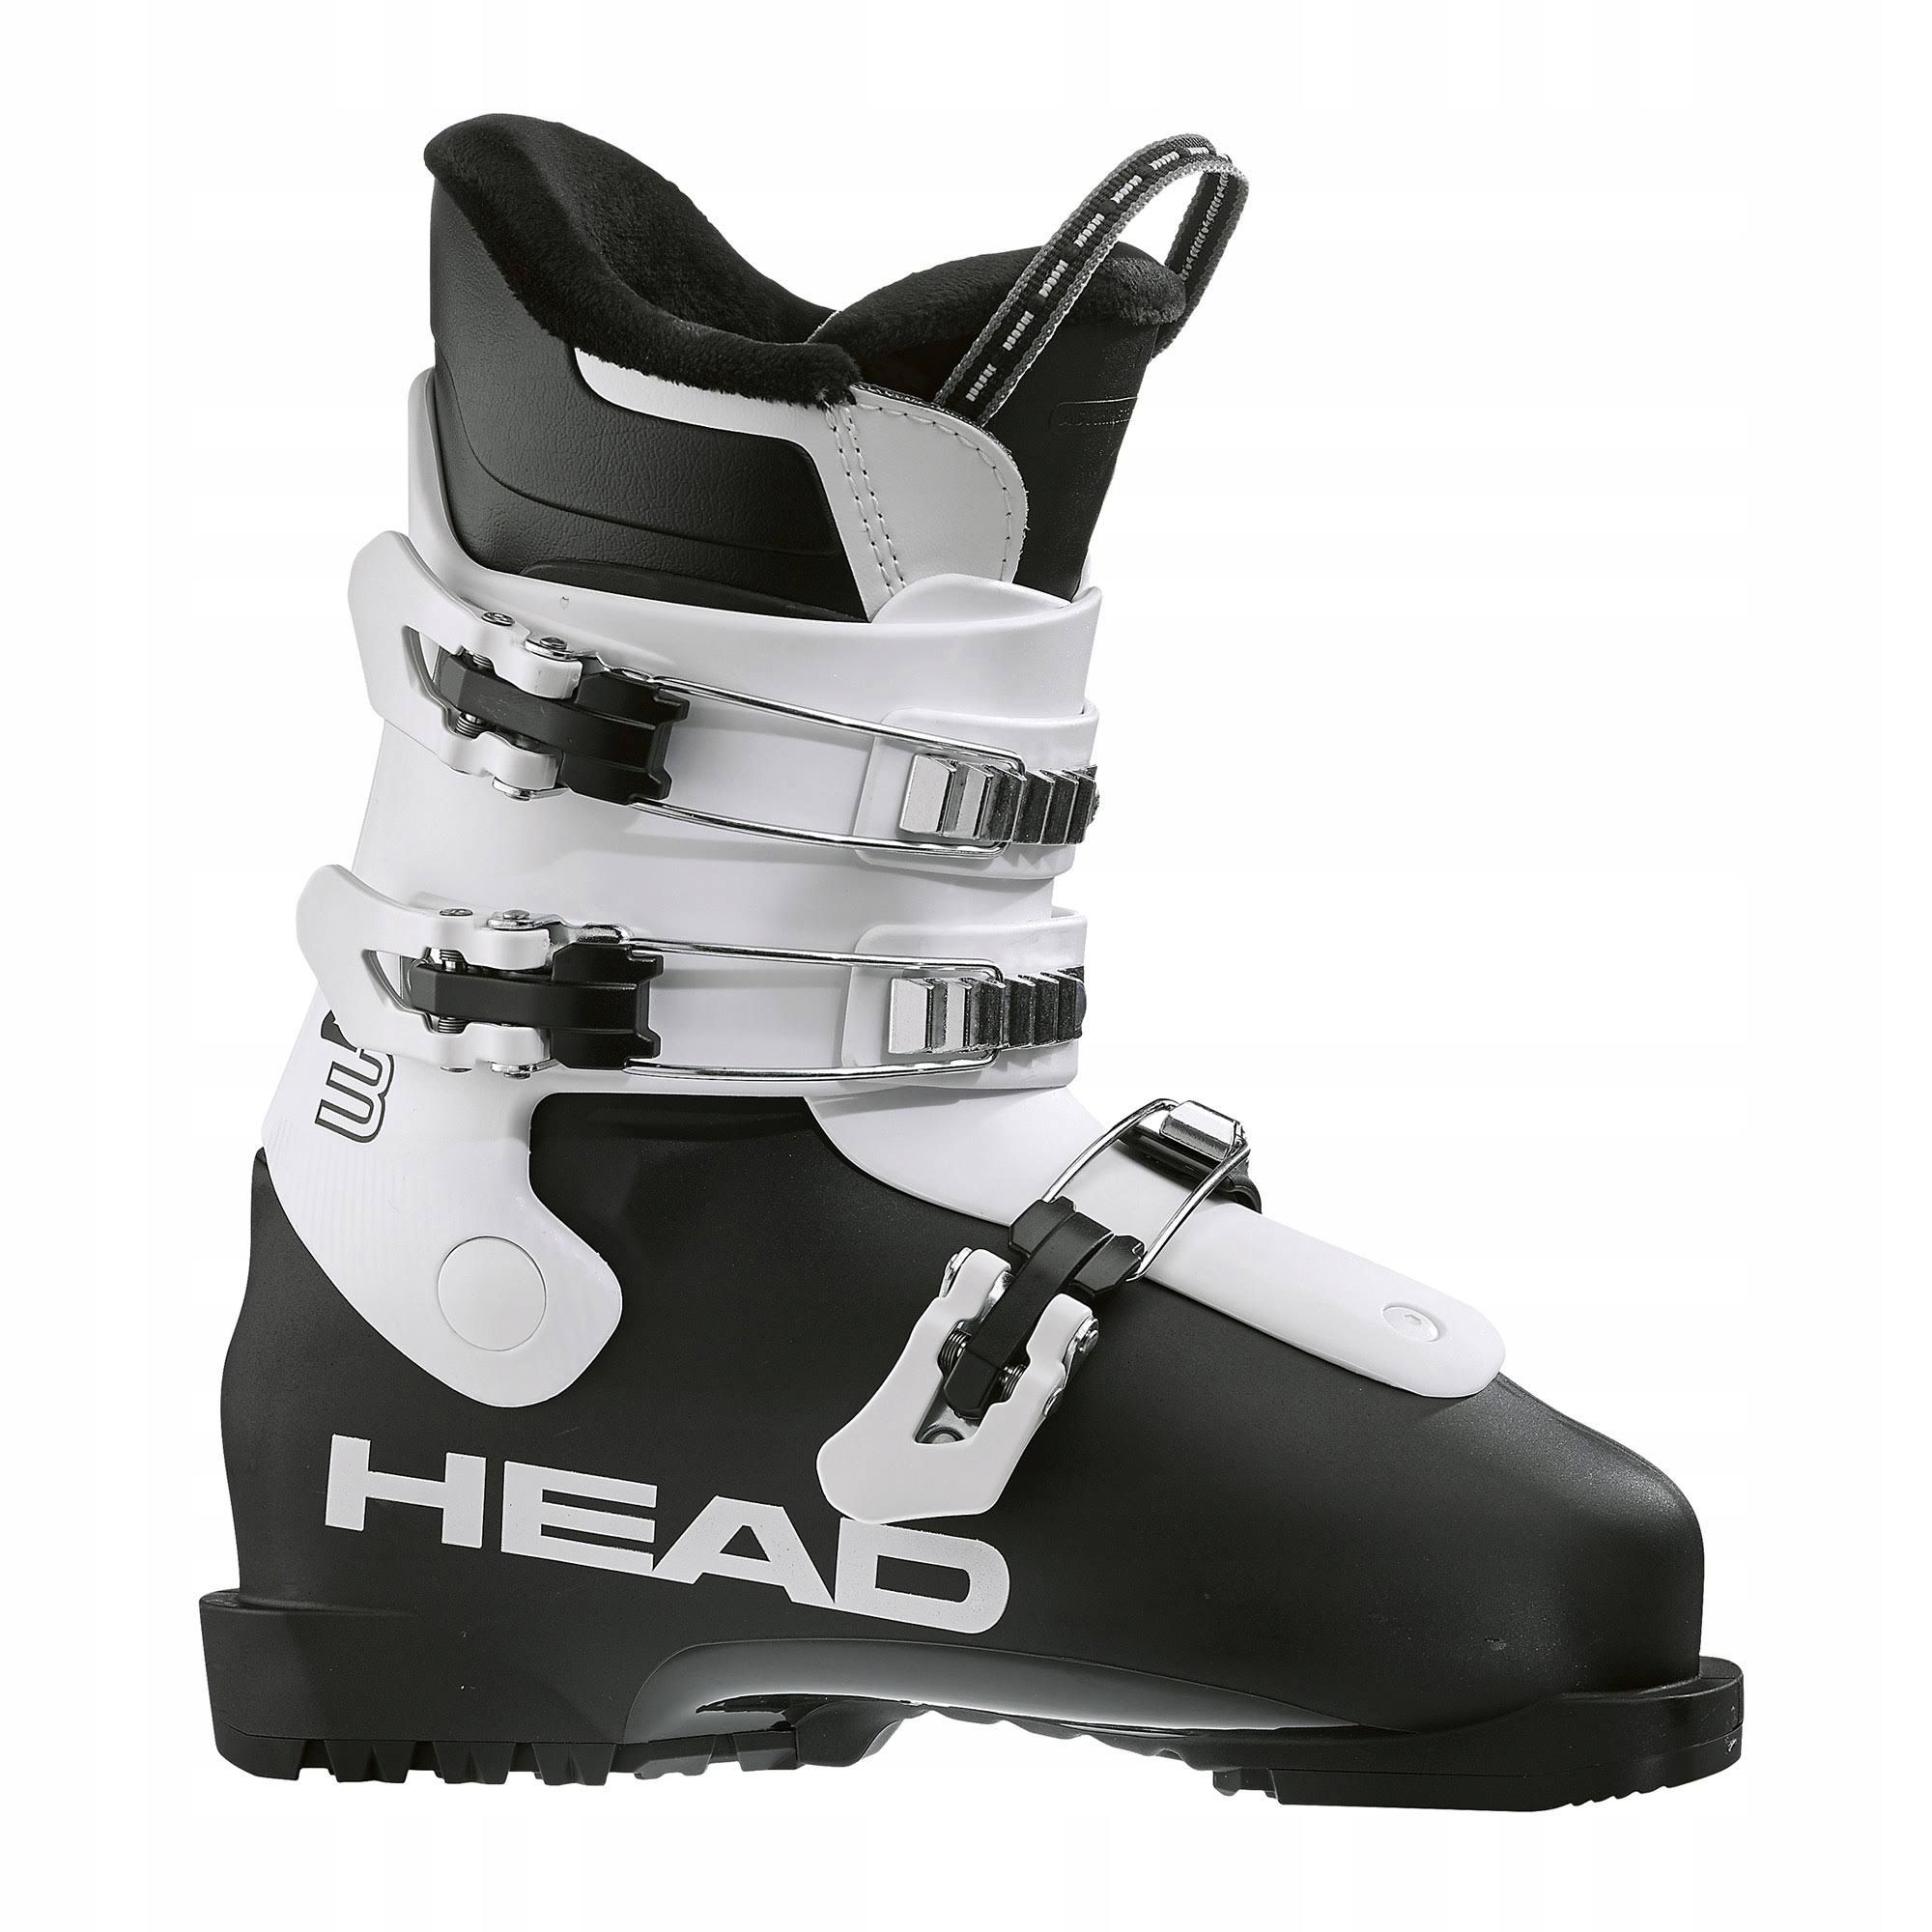 Head - Z3 Black White - 24.5 - Ski Boots